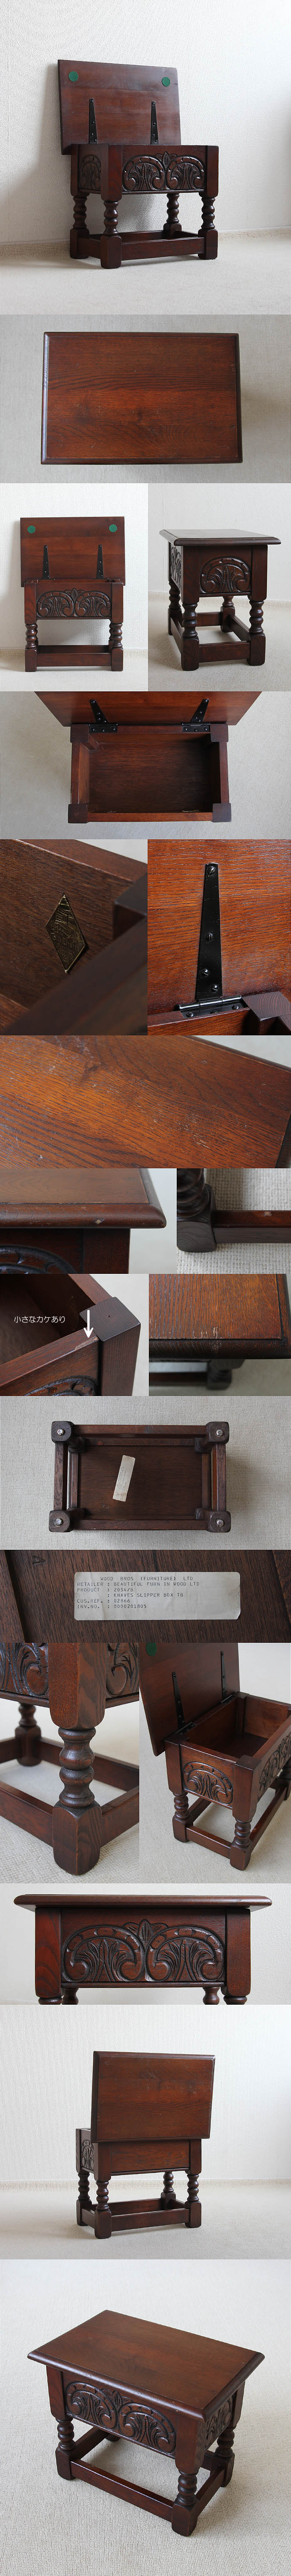 イギリス アンティーク調 Old Charm (オールドチャーム) サイドテーブル ボックス 家具「オーク」P-067